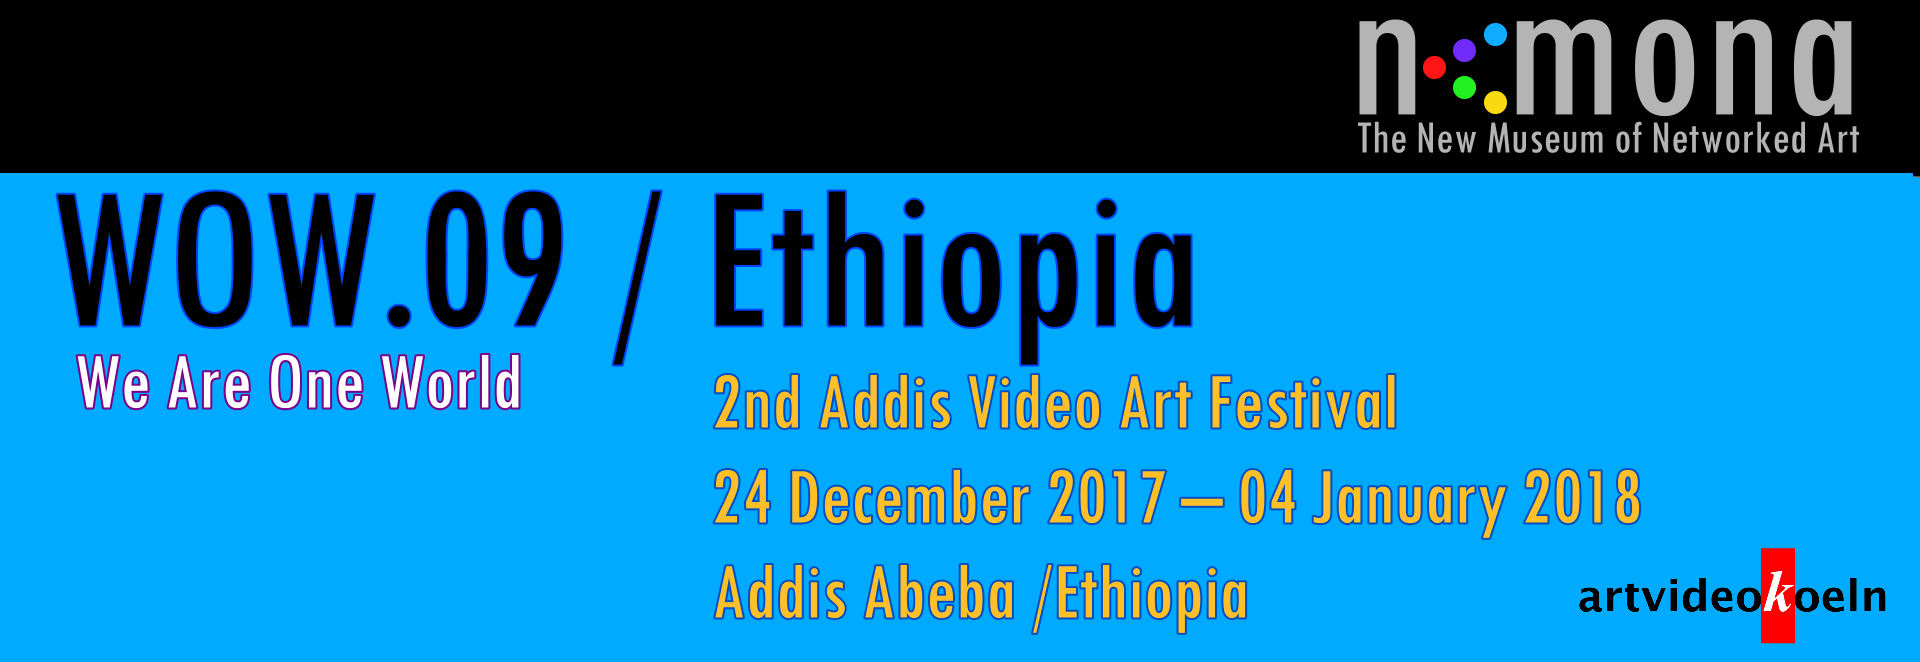 WOW.09 / Ethiopia